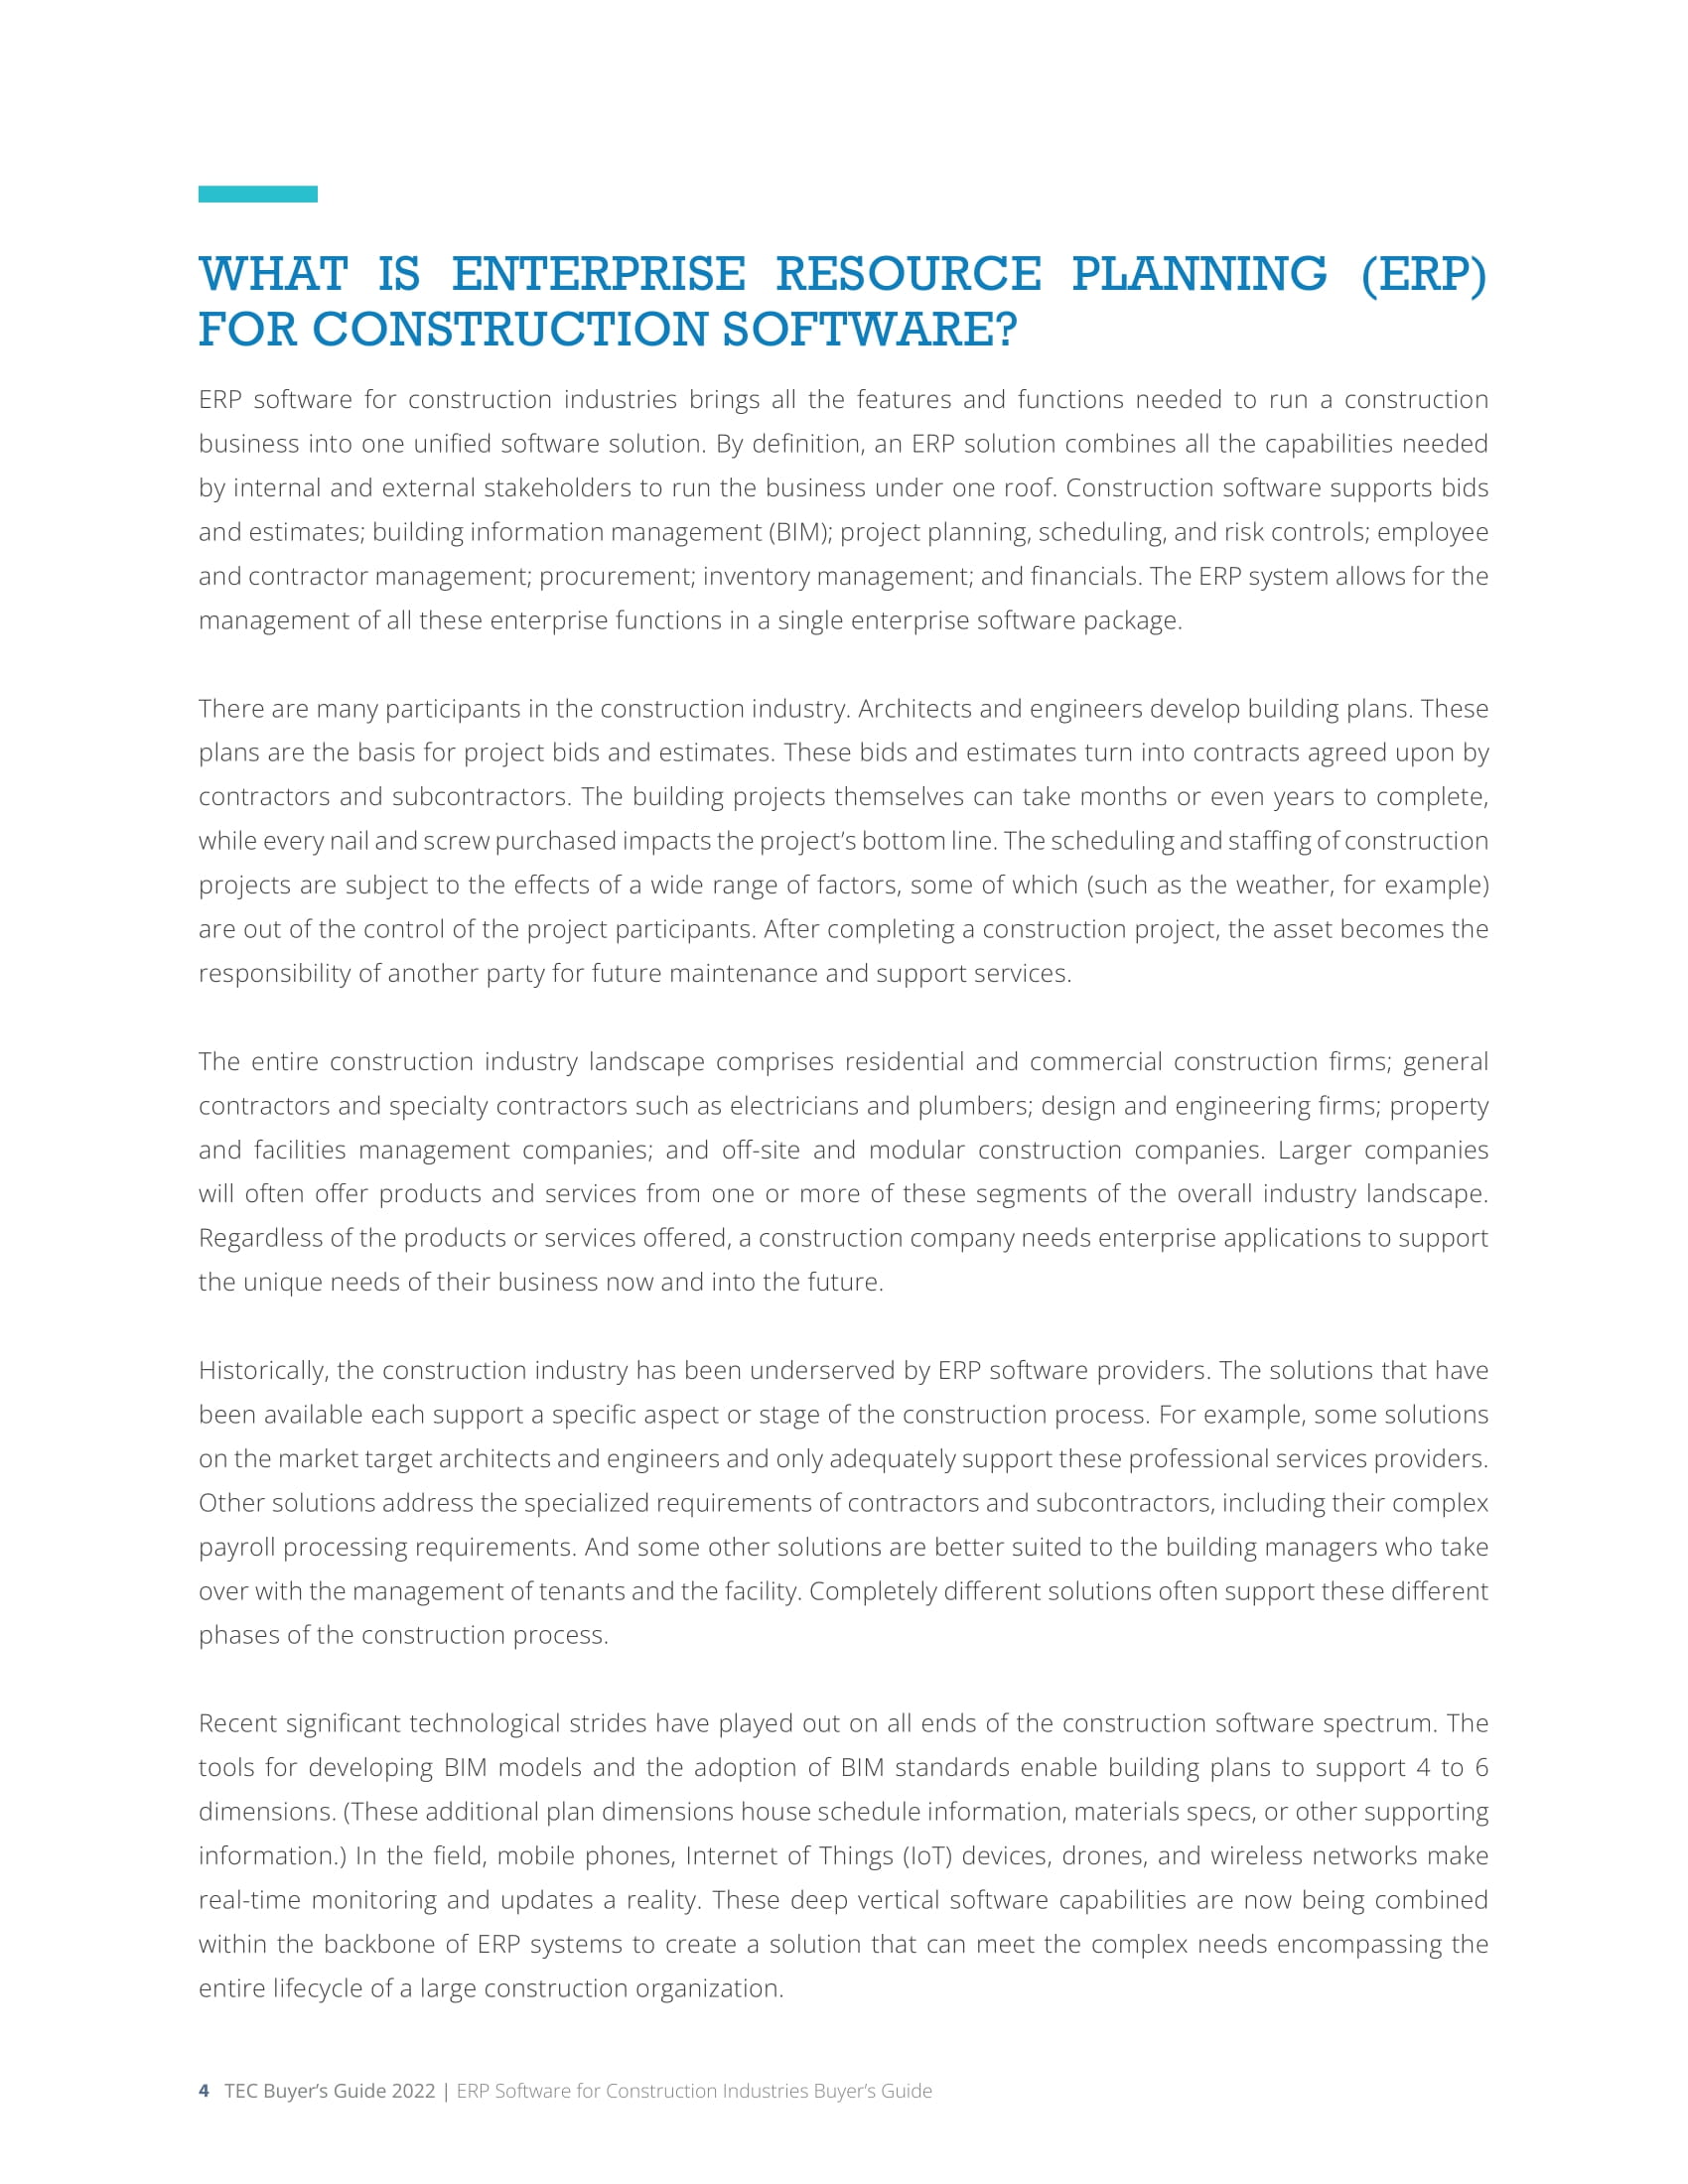 Le guide de l’acheteur du logiciel ERP pour les industries de la construction par les centres d’évaluation de la technologie (TEC) présente Acumatica., page 3